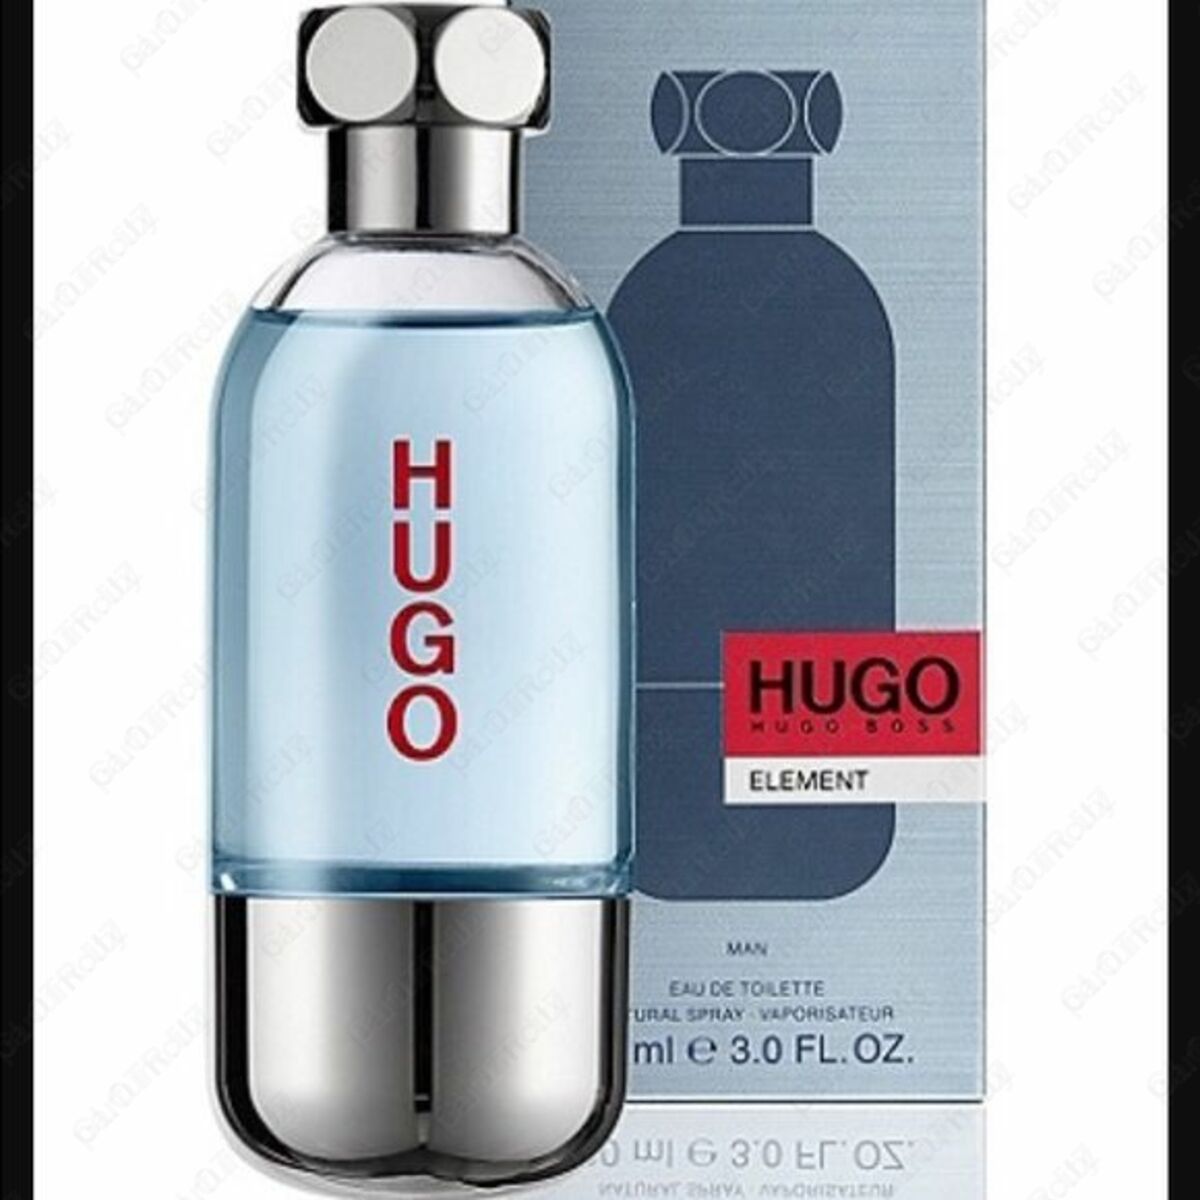 hugo boss made in uk